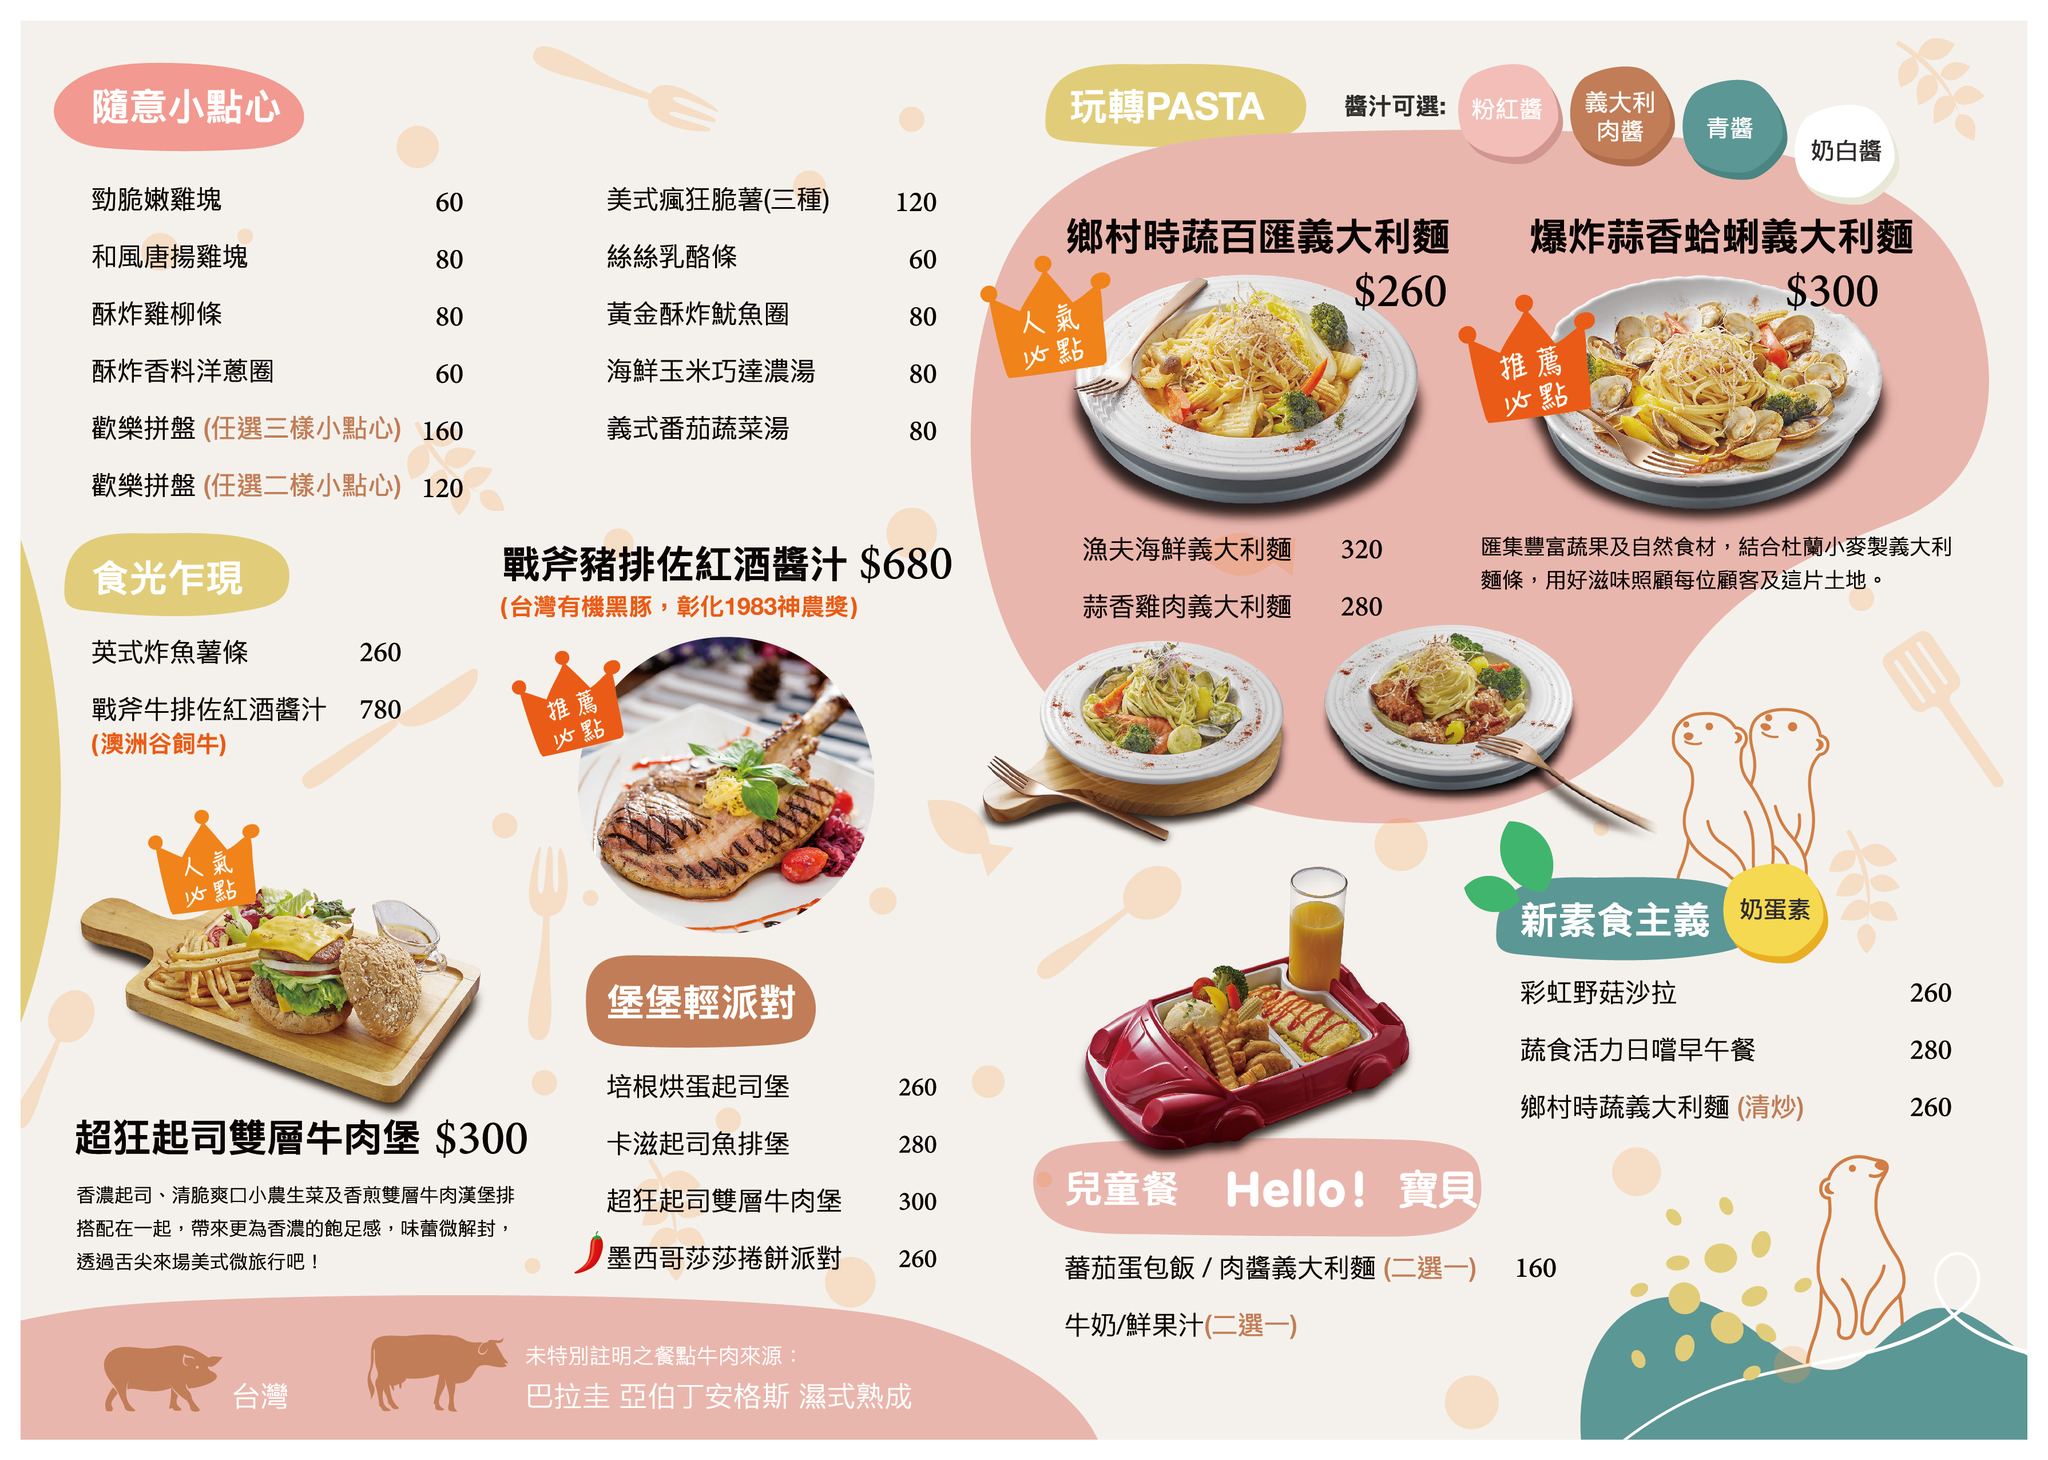 75度獴主題餐廳,動物主題親子公園,台北主題餐廳,台北寵物住宿,台北寵物咖啡廳,台北美食,狐獴主題餐廳